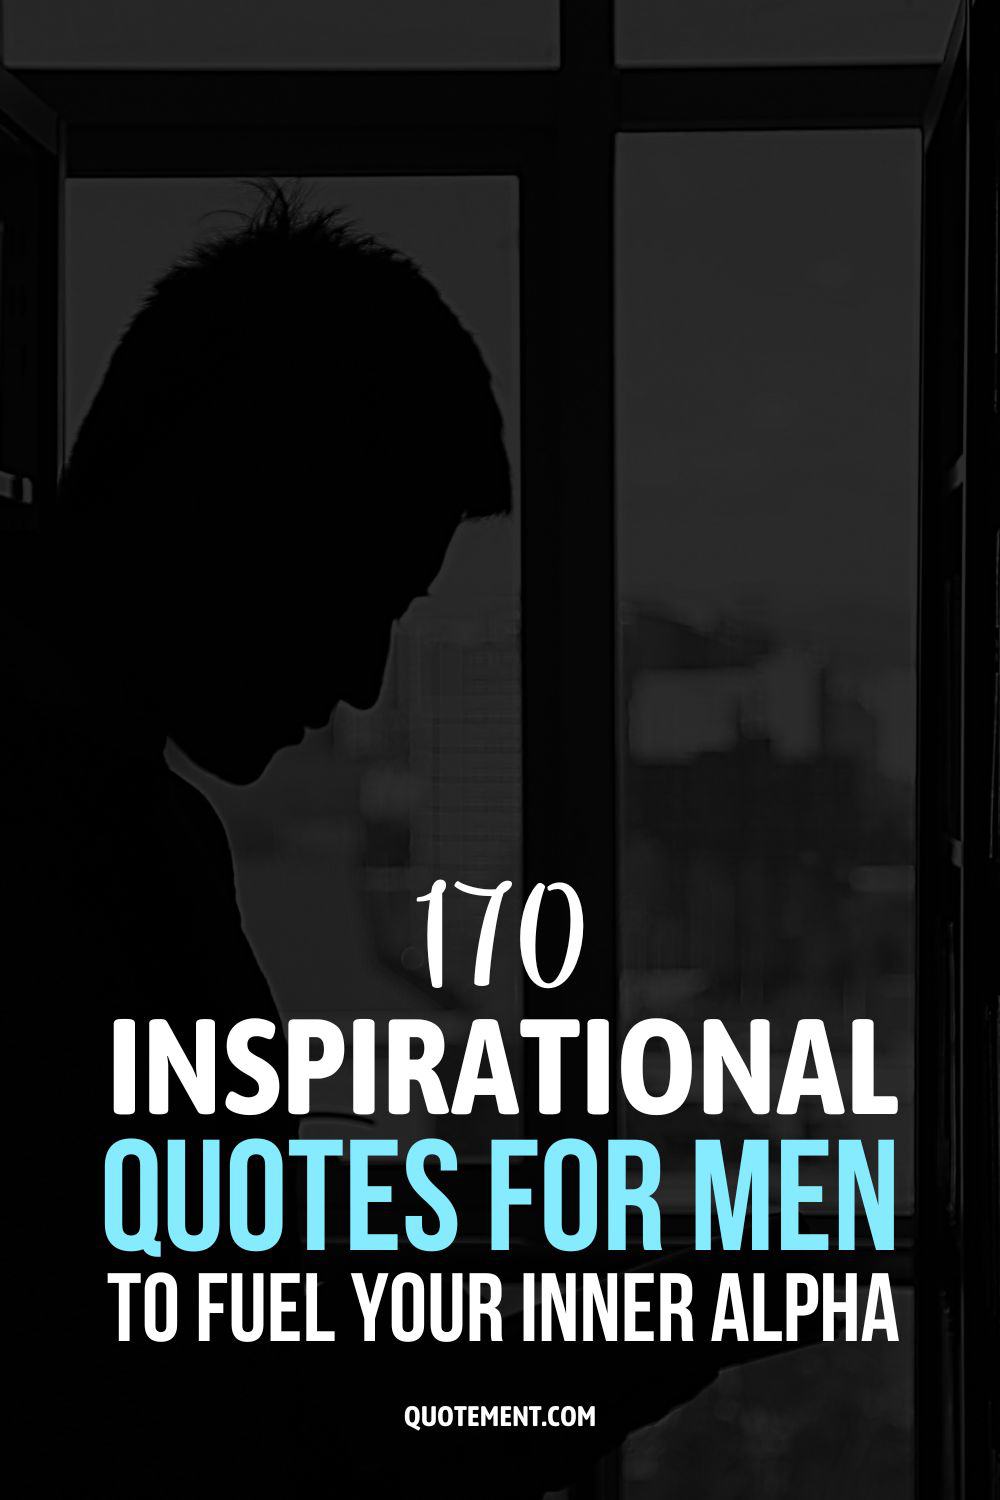 170 citas inspiradoras para hombres que alimentarán tu alfa interior